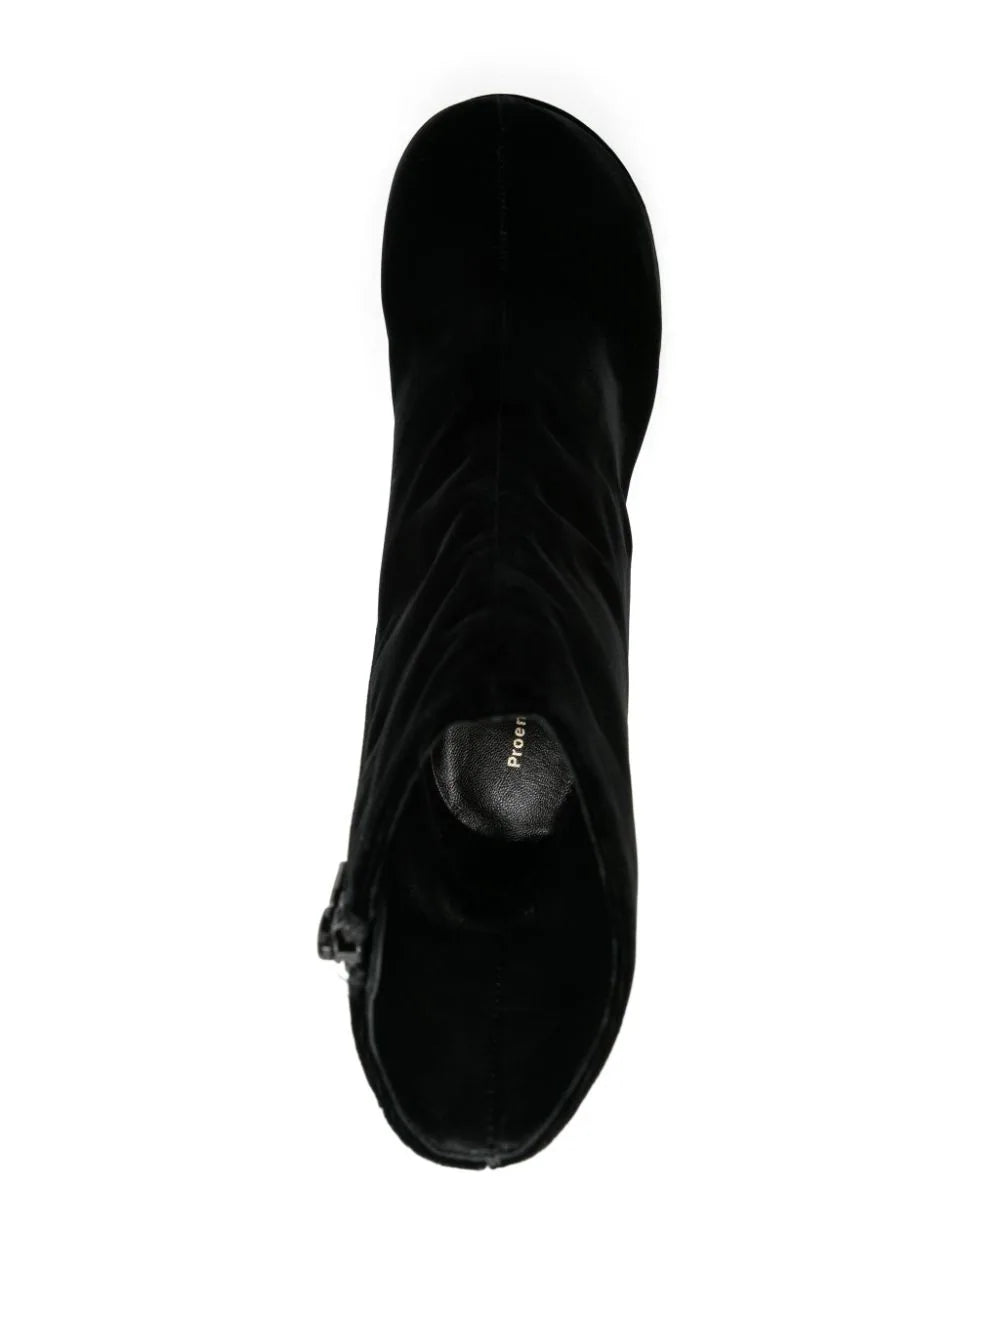 Forma Platform Boots in Black Velvet